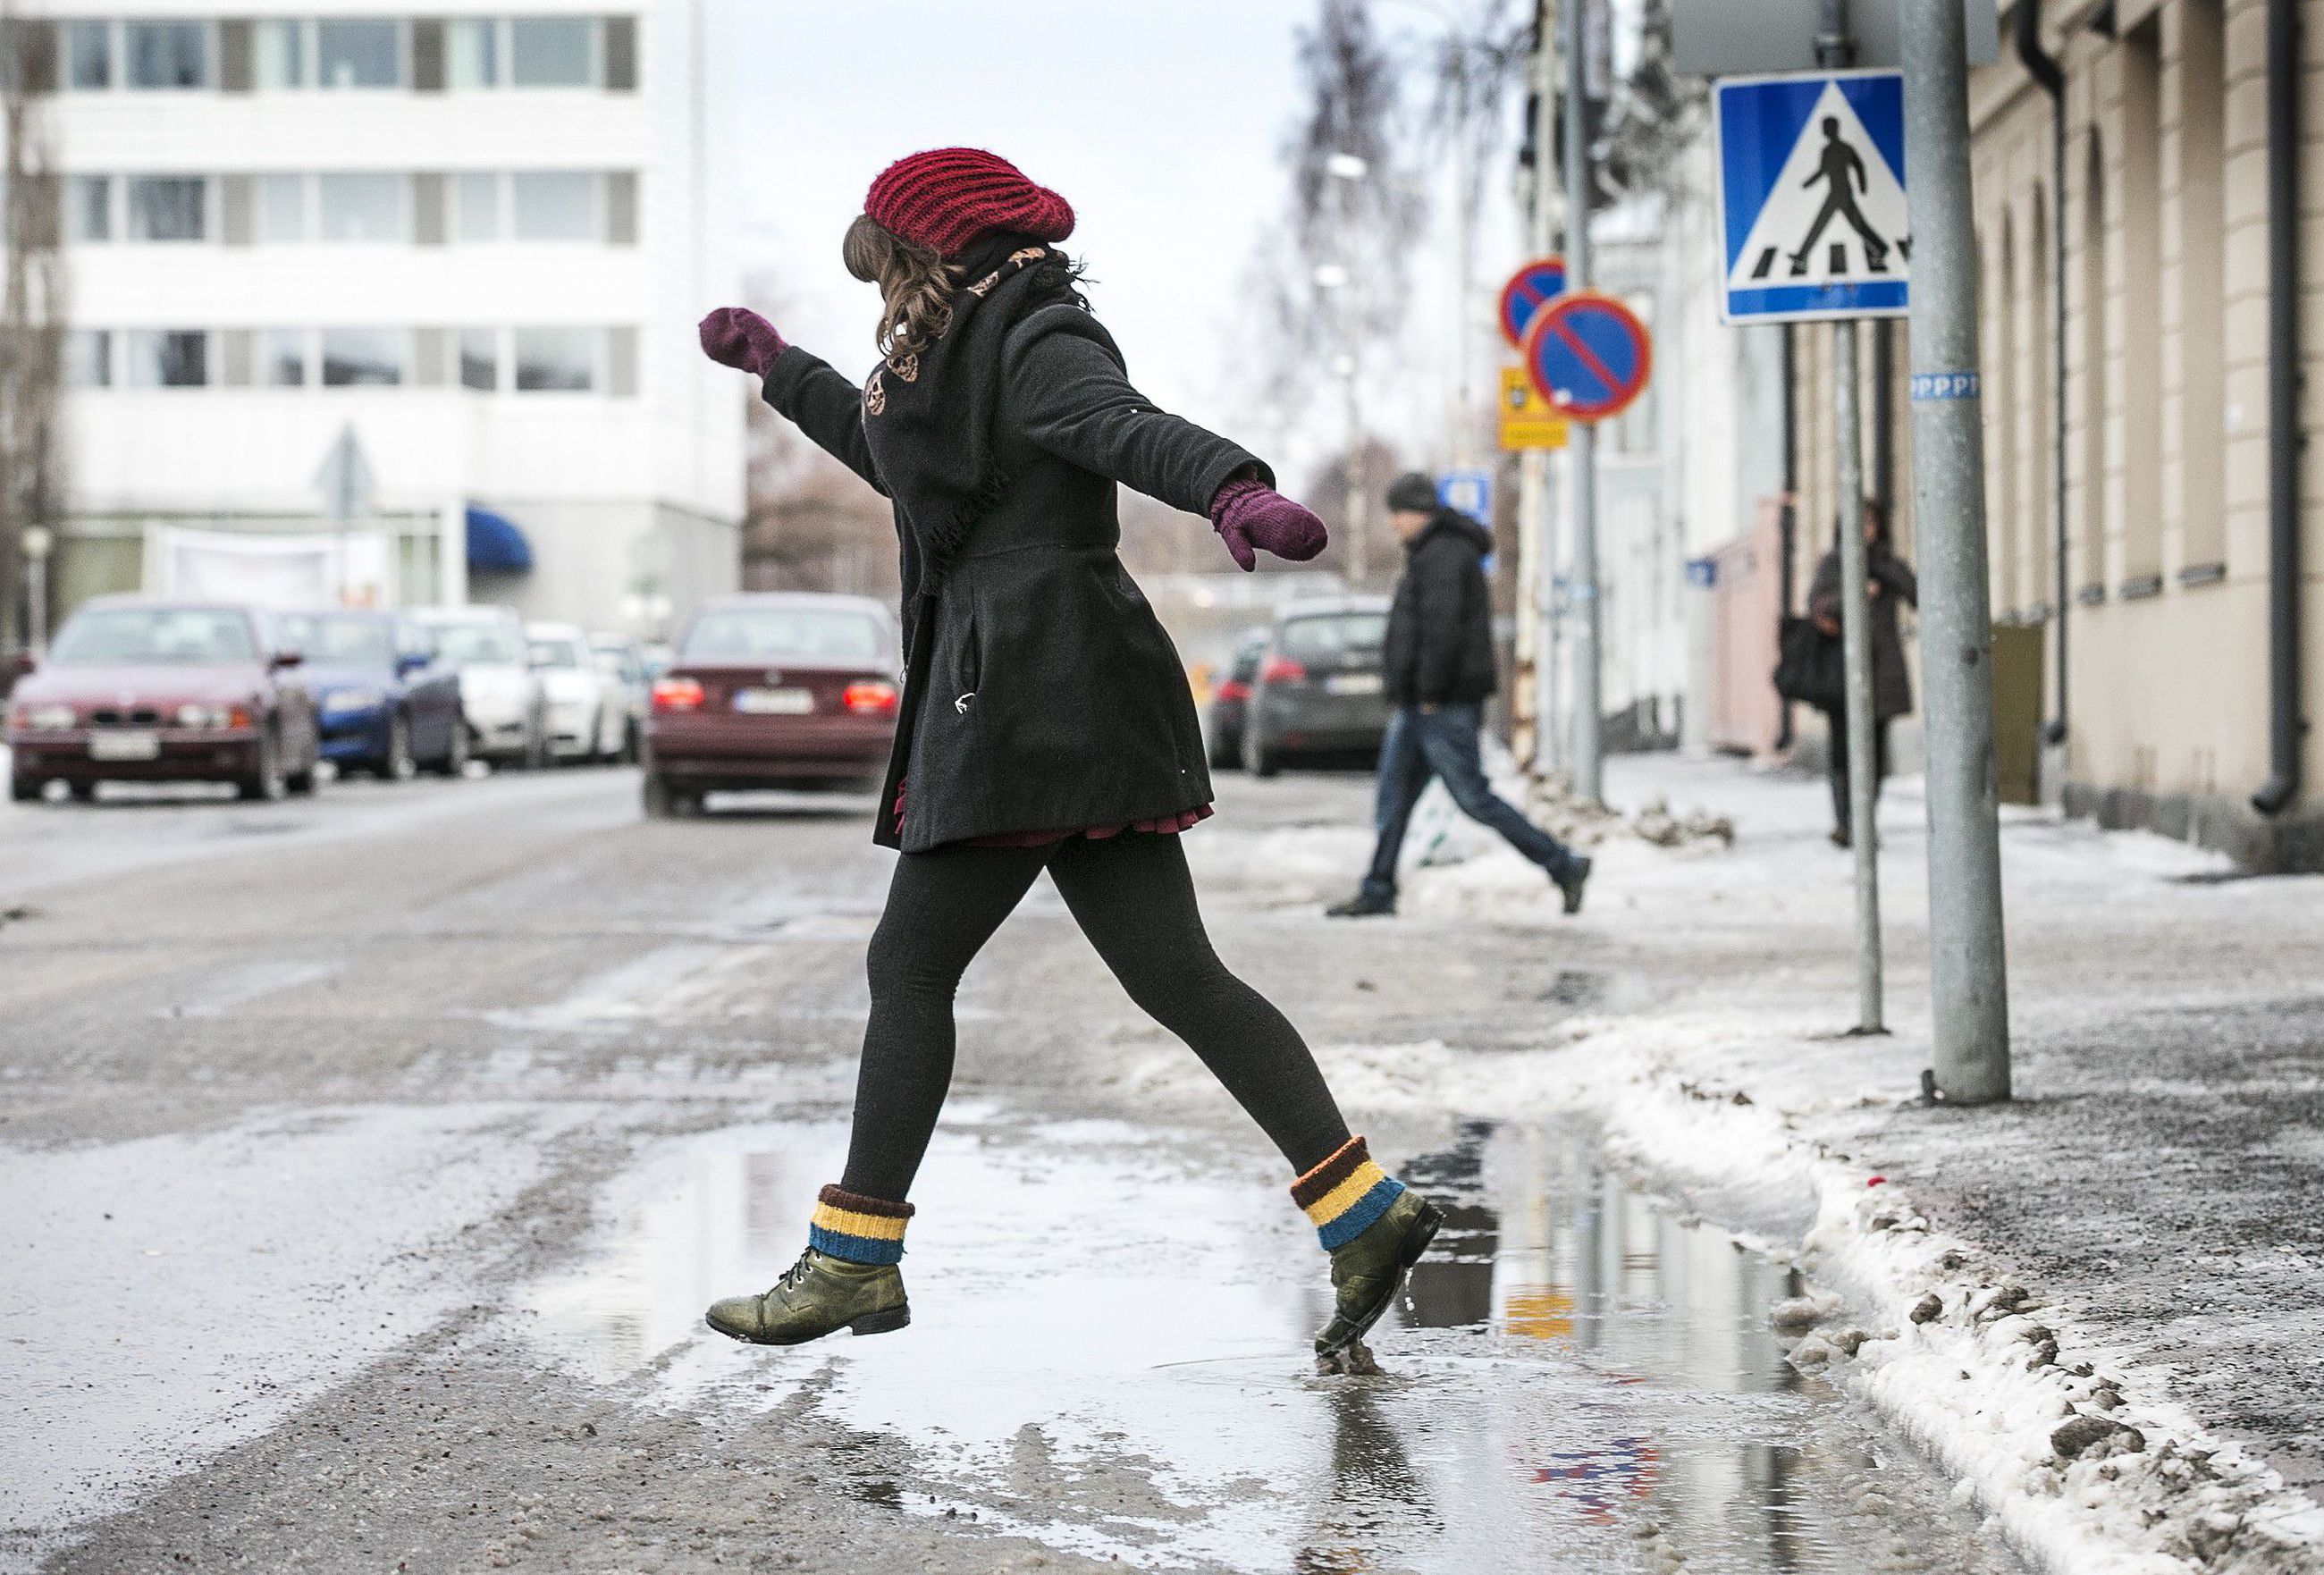 Ennuste: Lämpötilat nousevat Suomessa vauhdilla, Keski-Suomeen voi tulla  Unkarin talvisää | Kaleva